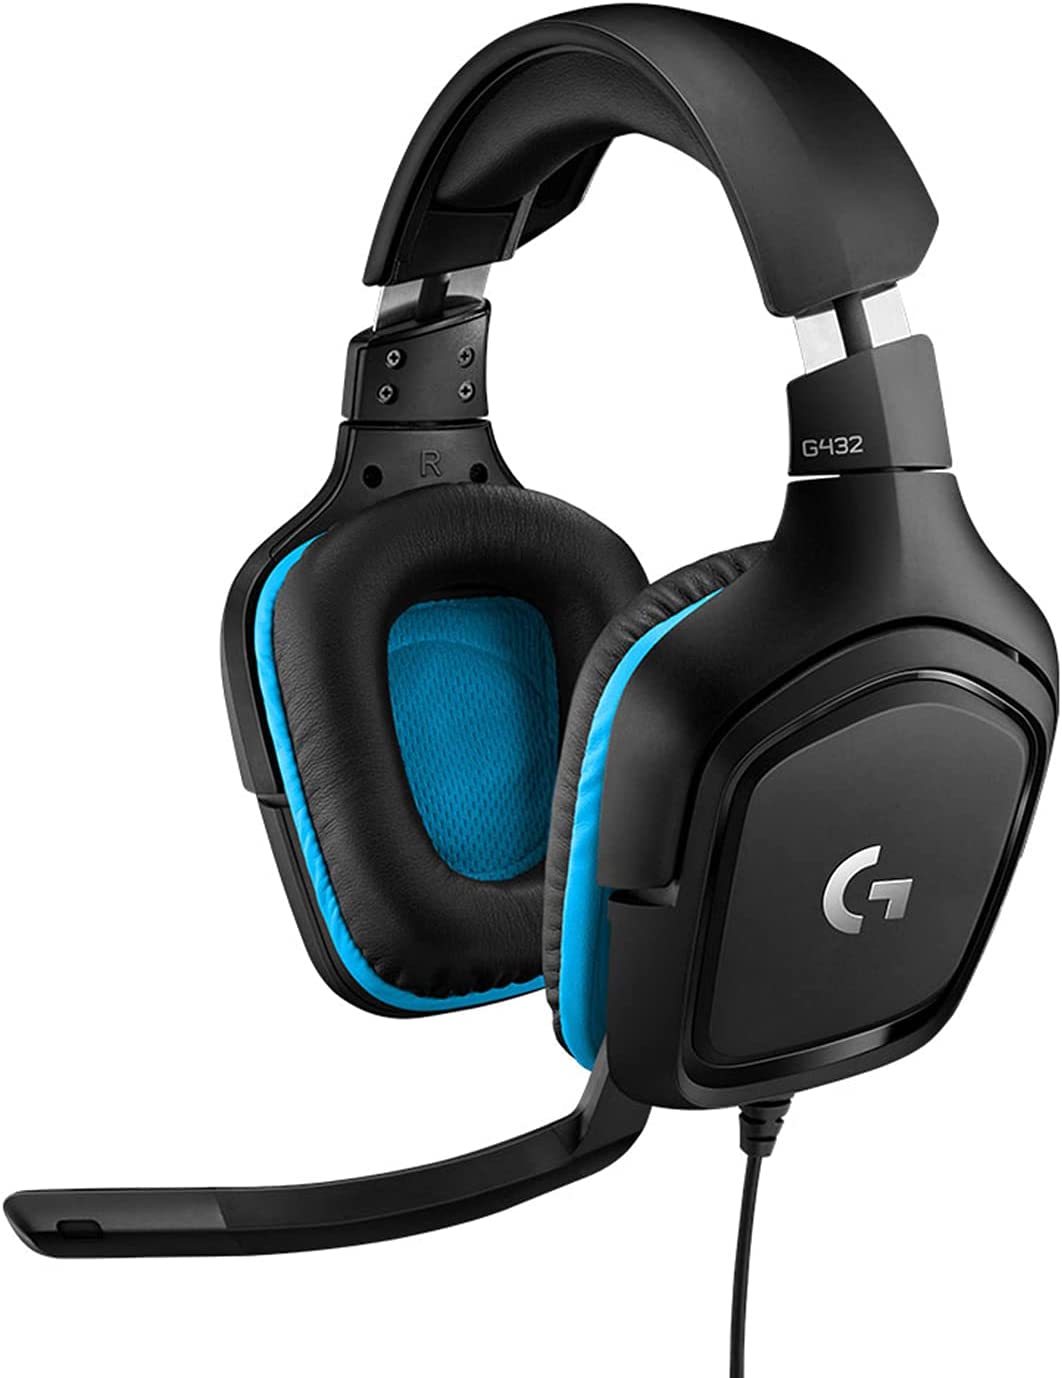 (C) Logitech G432 kabelgebundenes Gaming-Headset, 7.1 Surround Sound